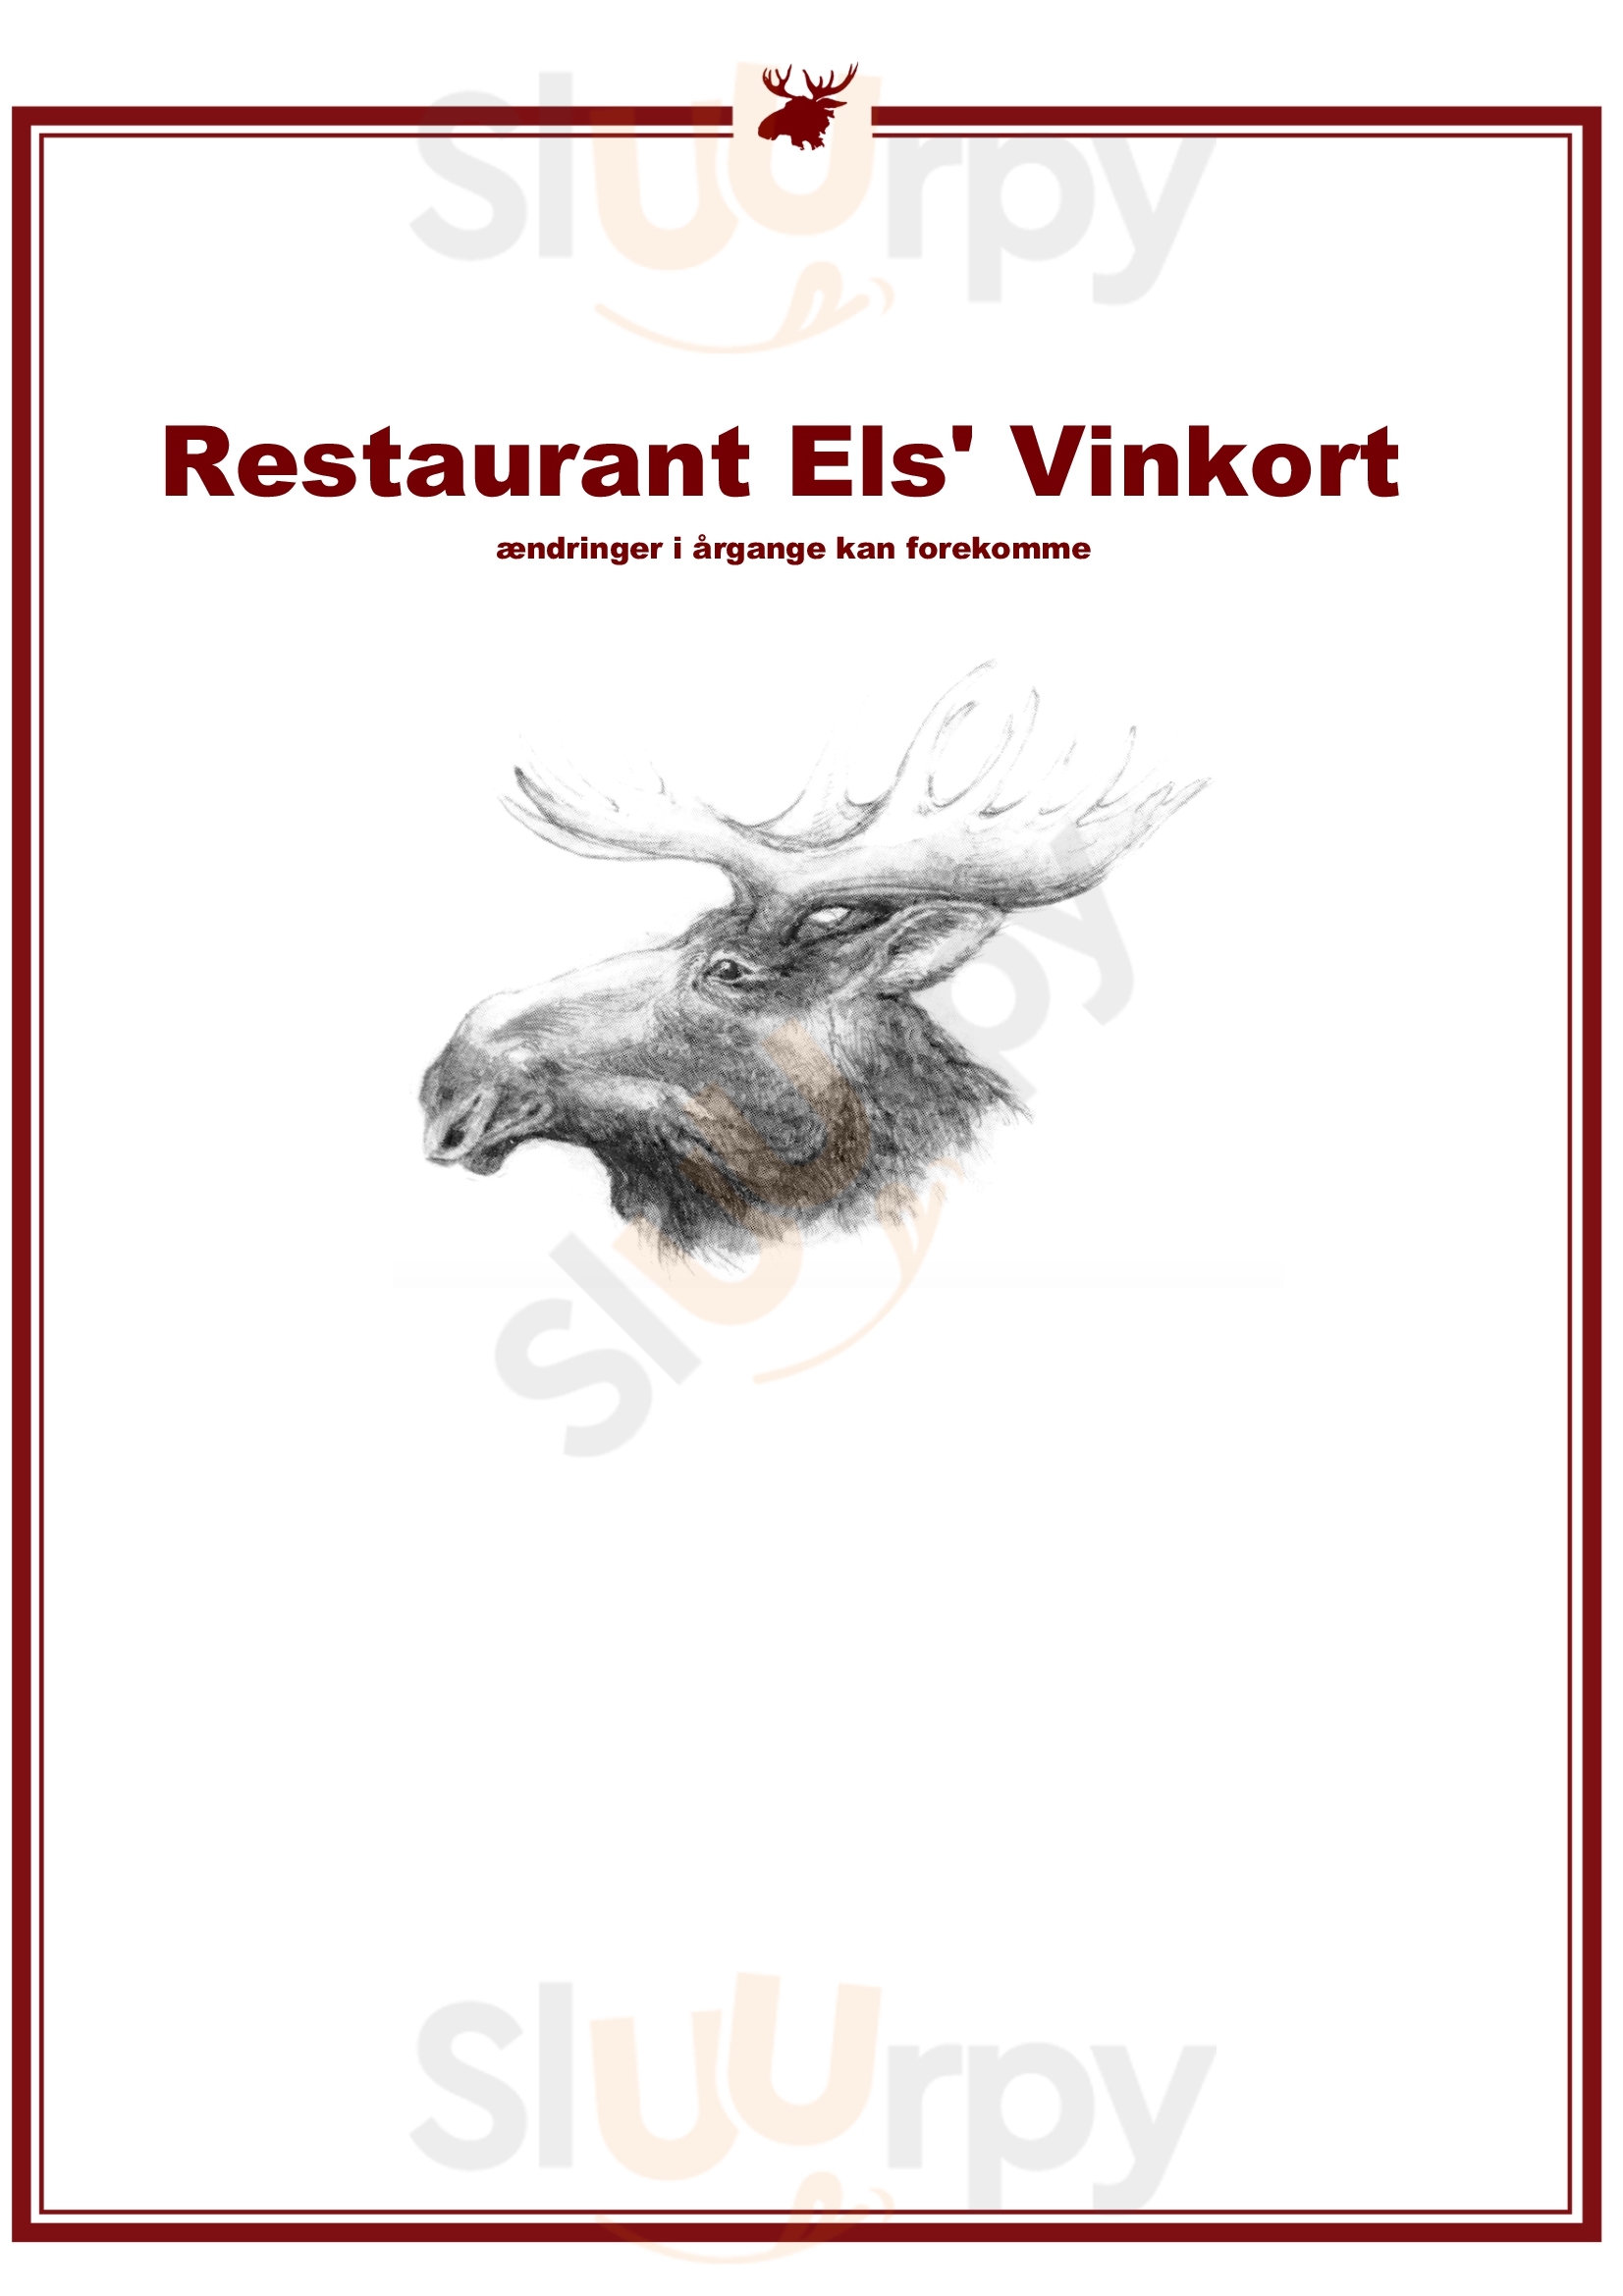 Restaurant Els København Menu - 1